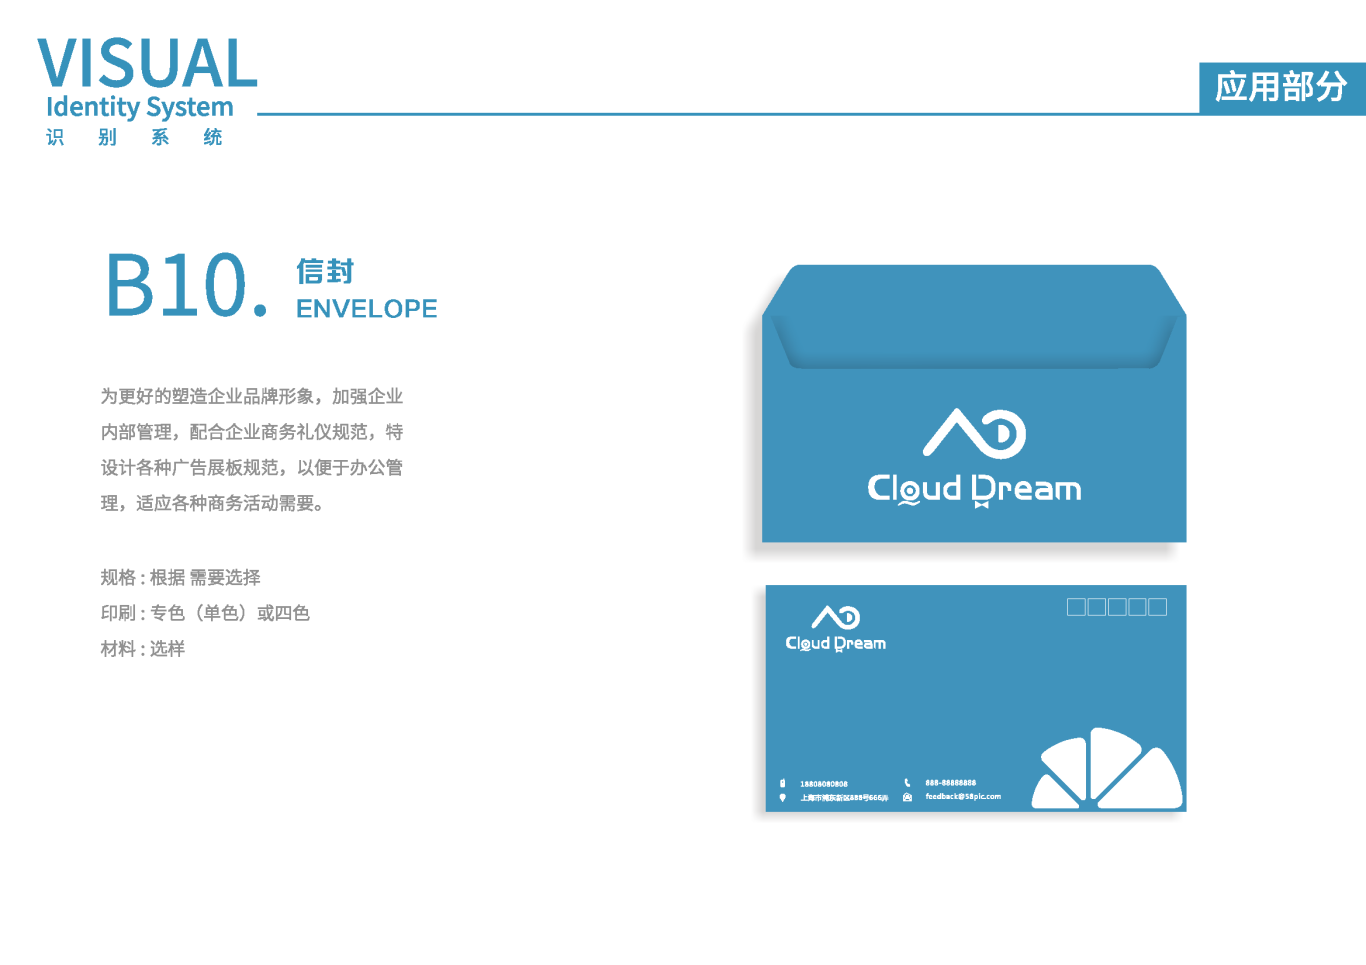 Cloud DreamVIS視覺識別系統手冊圖20